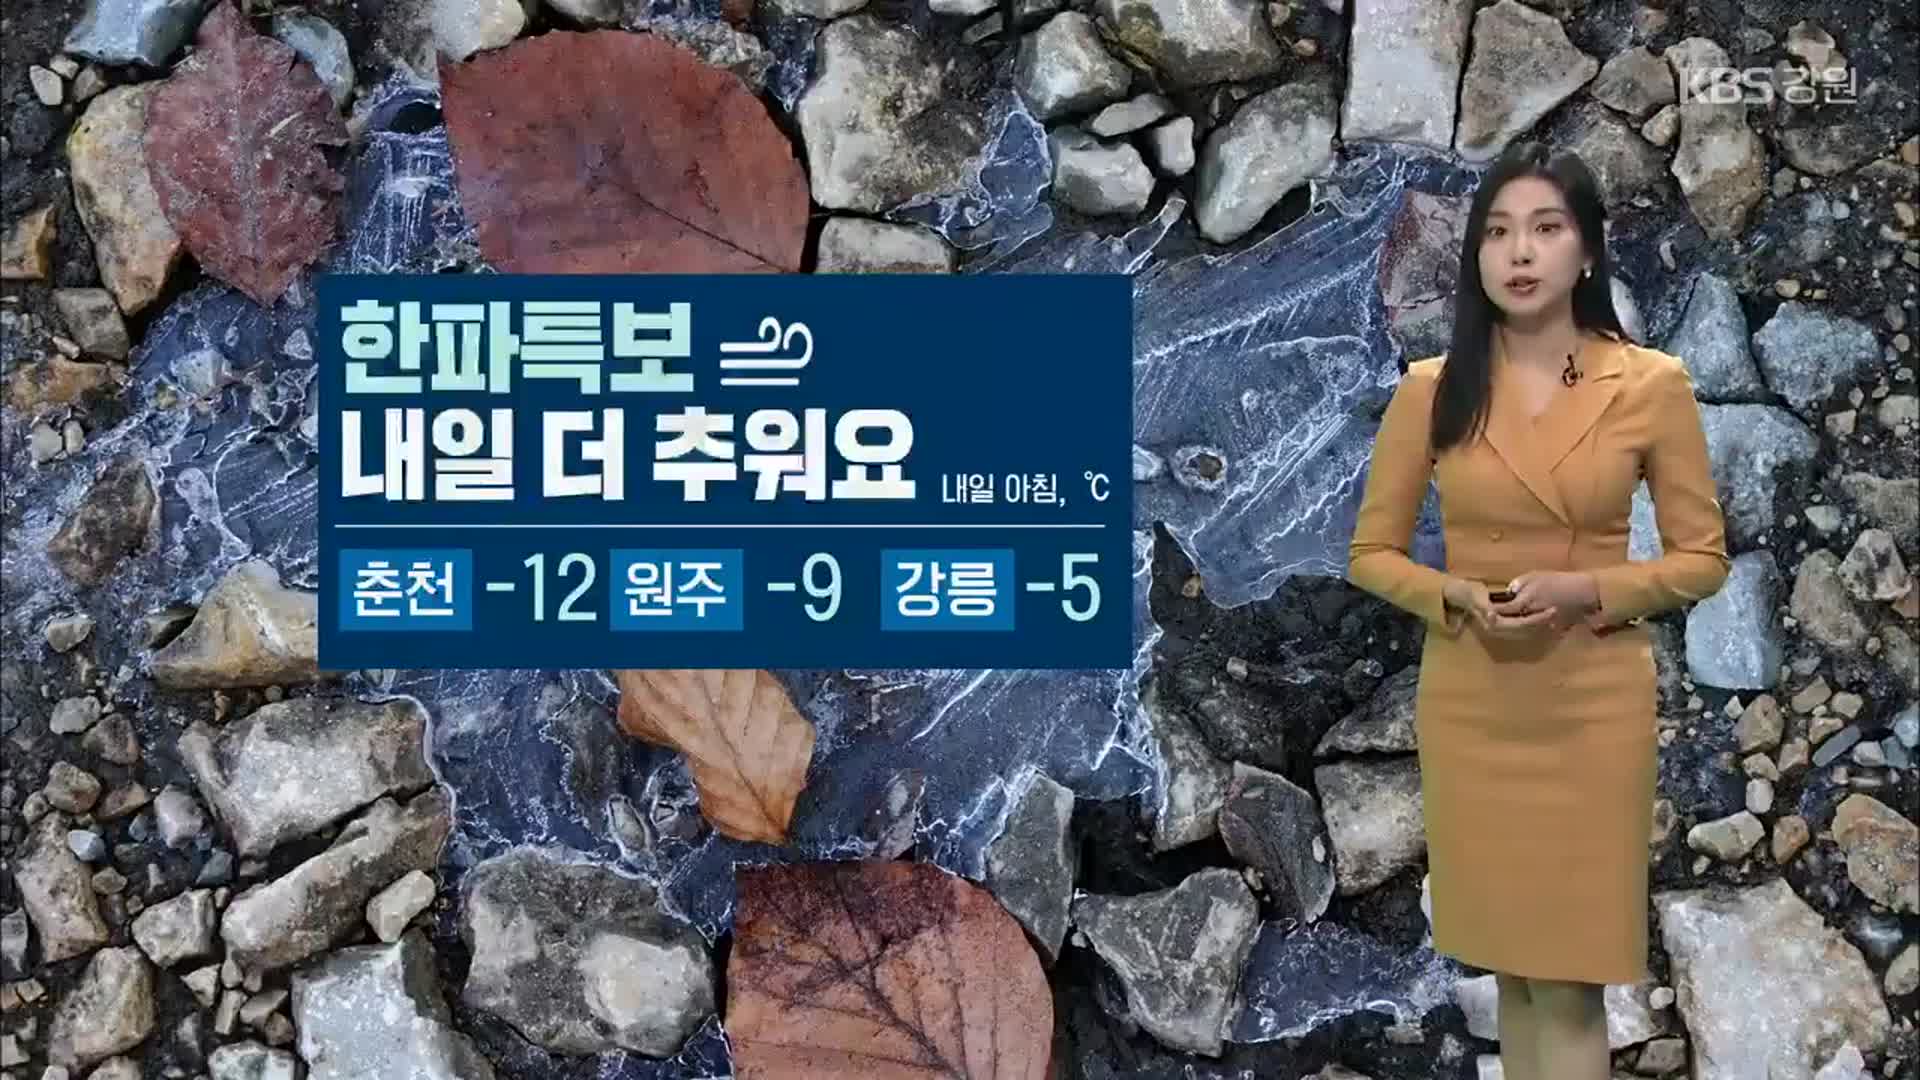 [날씨] 강원 한파특보…내일 아침 춘천 -12도·원주 -9도